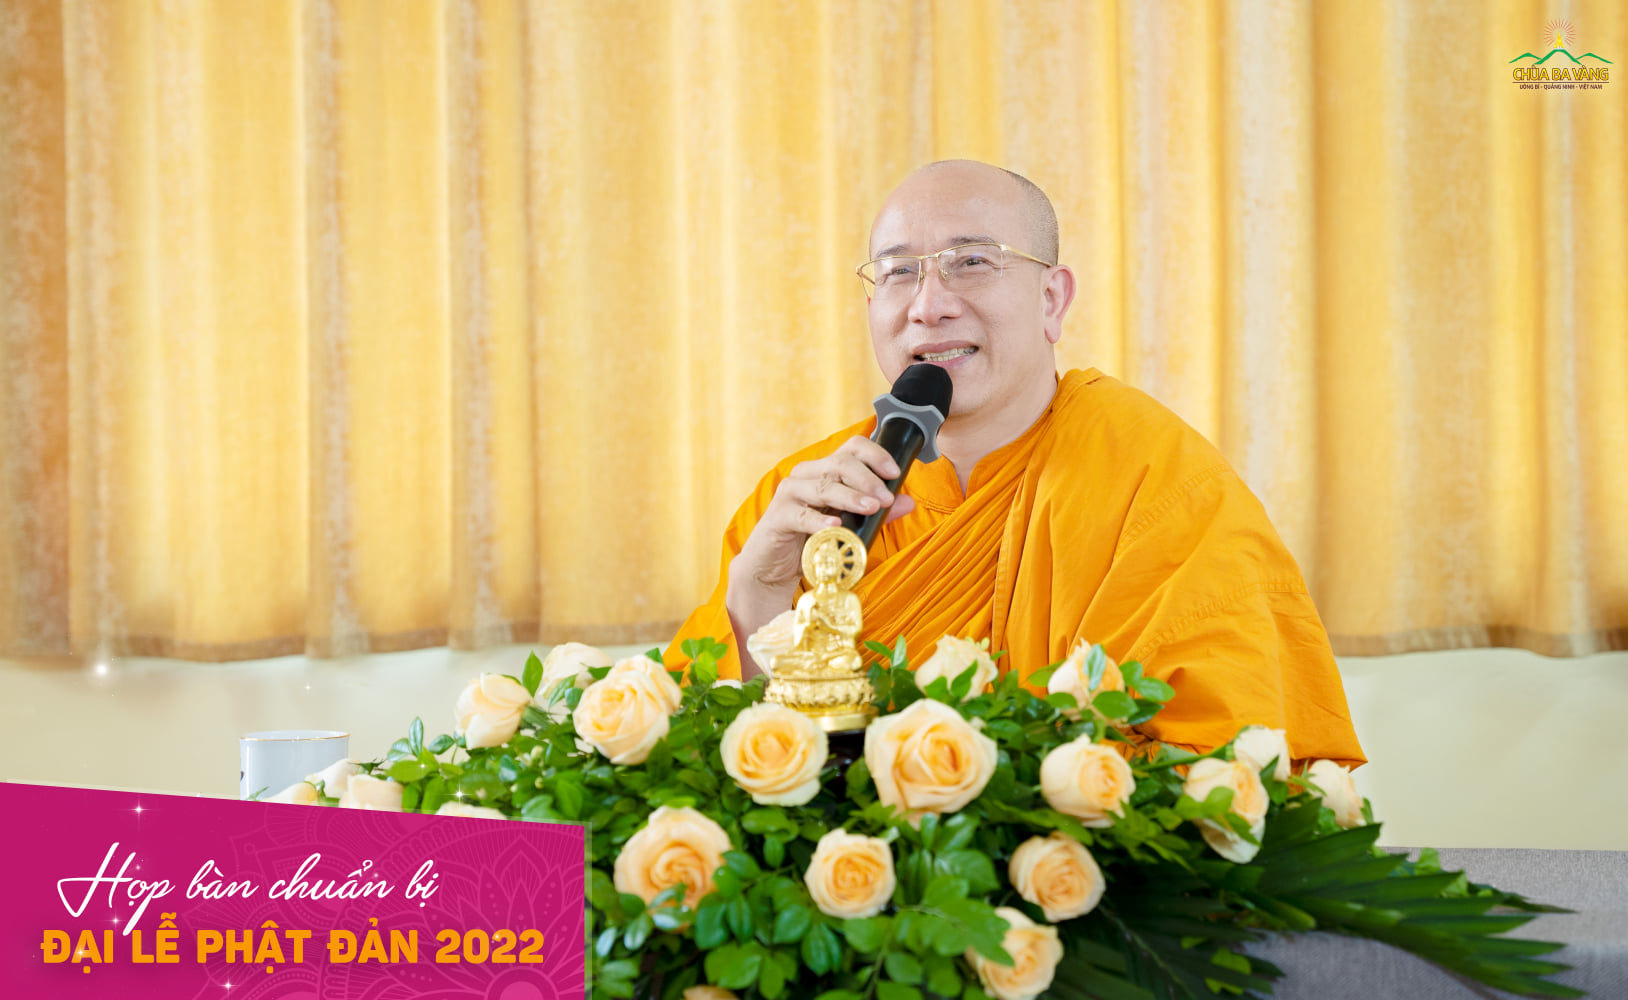 Sáng ngày 03/5/2022, Sư Phụ Thích Trúc Thái Minh đã có buổi họp với các ban tại chùa về công tác chuẩn bị cho Đại lễ Phật đản chùa Ba Vàng 2022